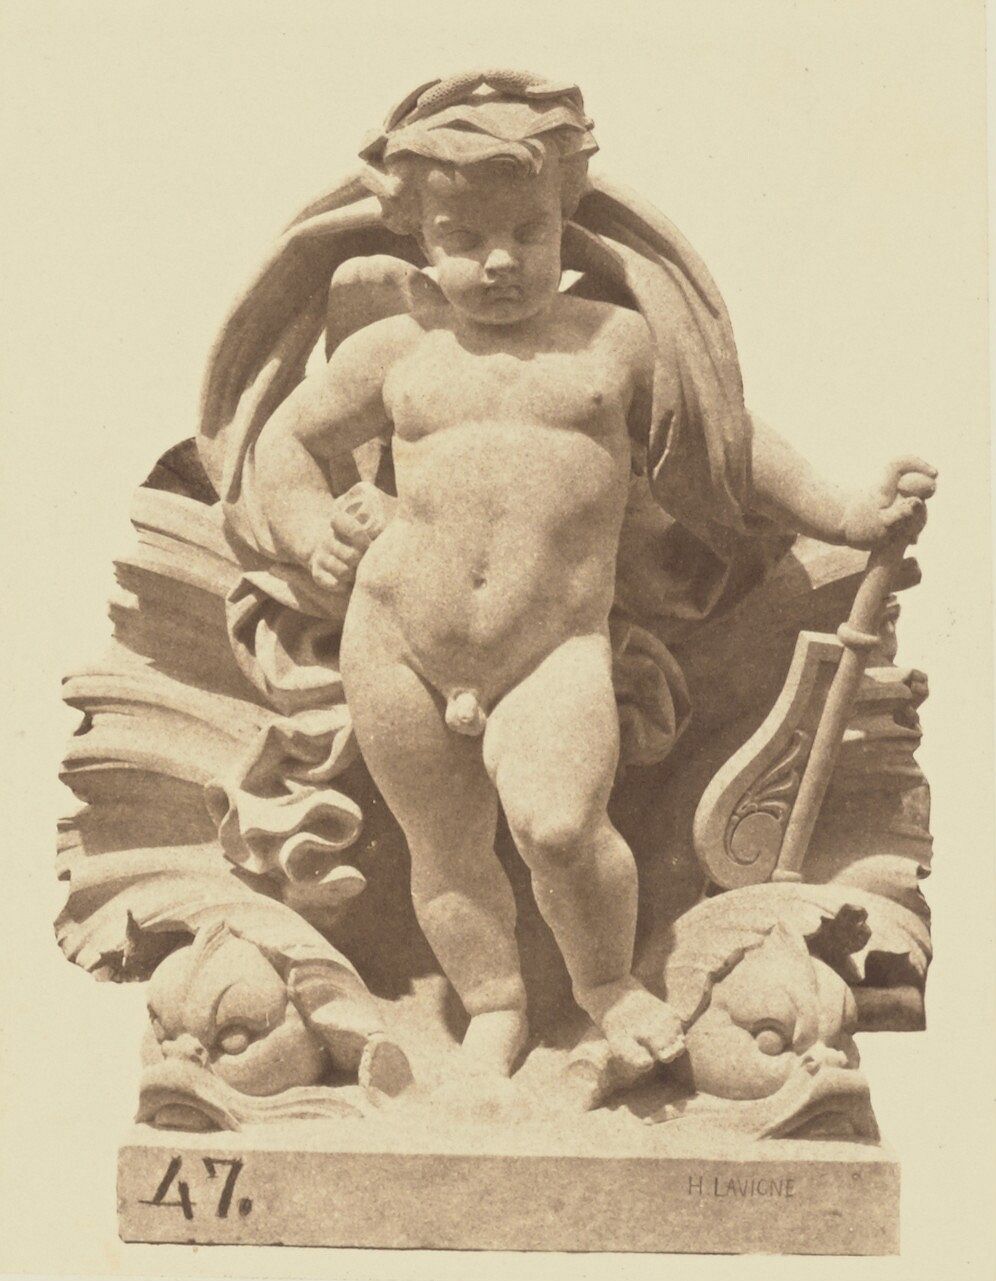 "L'Eau", Sculpture by Hubert Lavigne, Decoration of the Louvre, Paris by Édouard Baldus